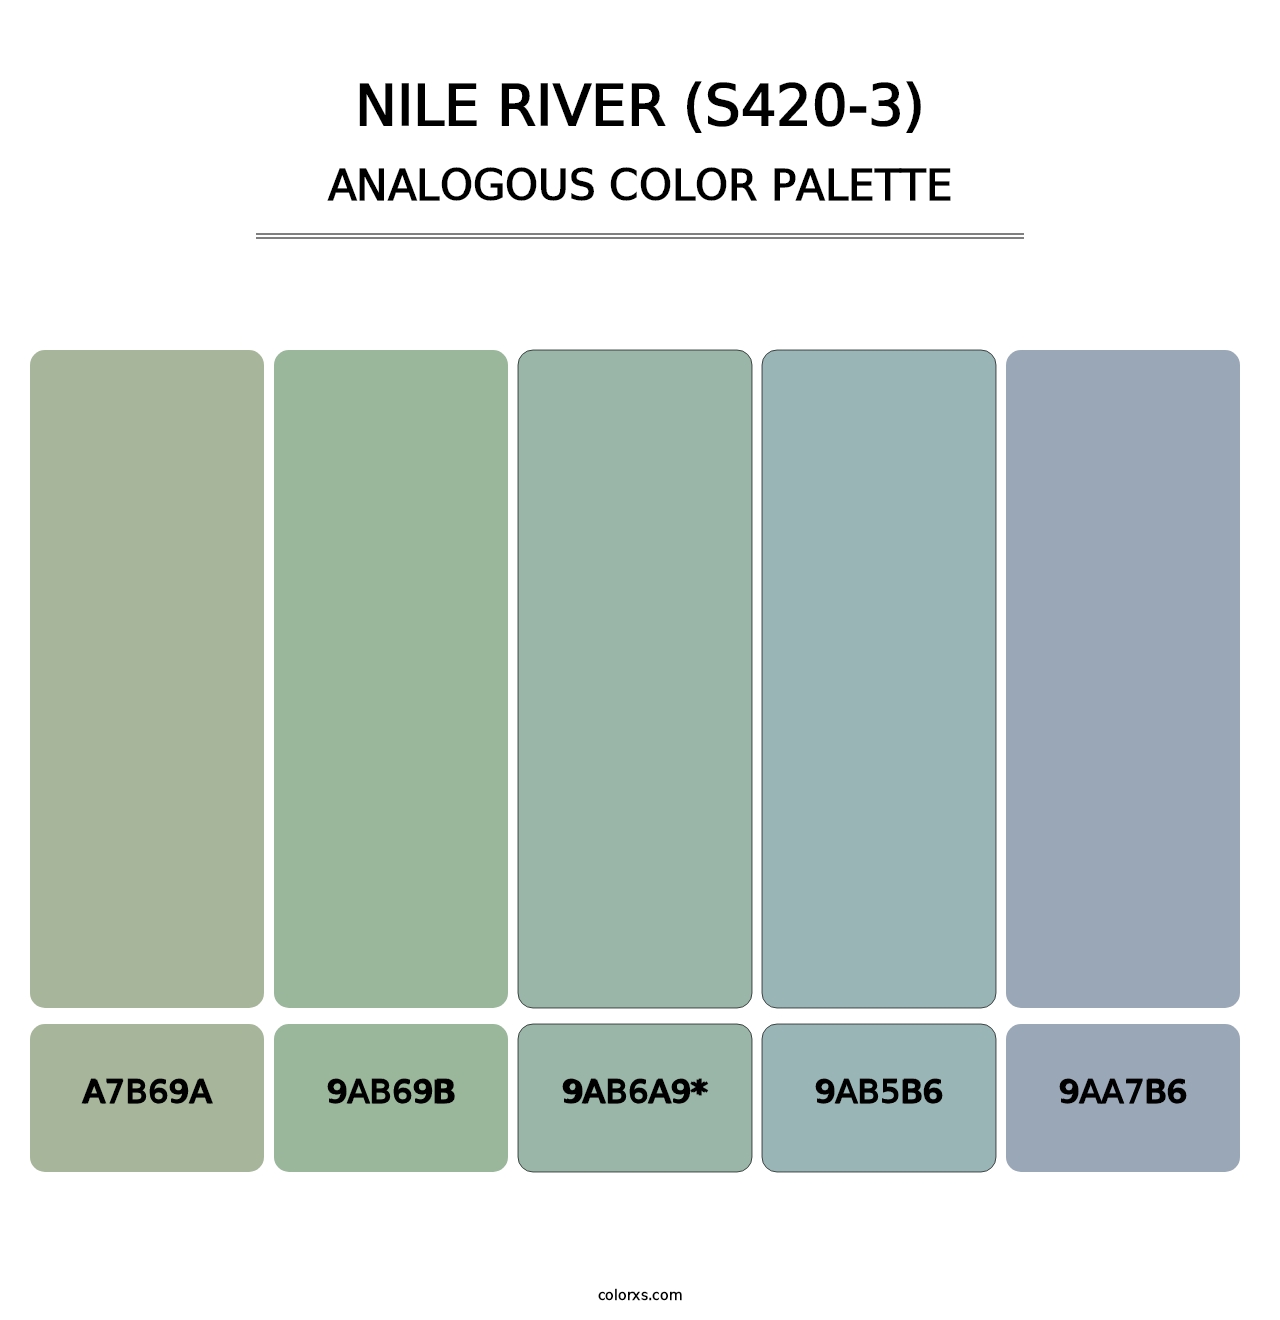 Nile River (S420-3) - Analogous Color Palette